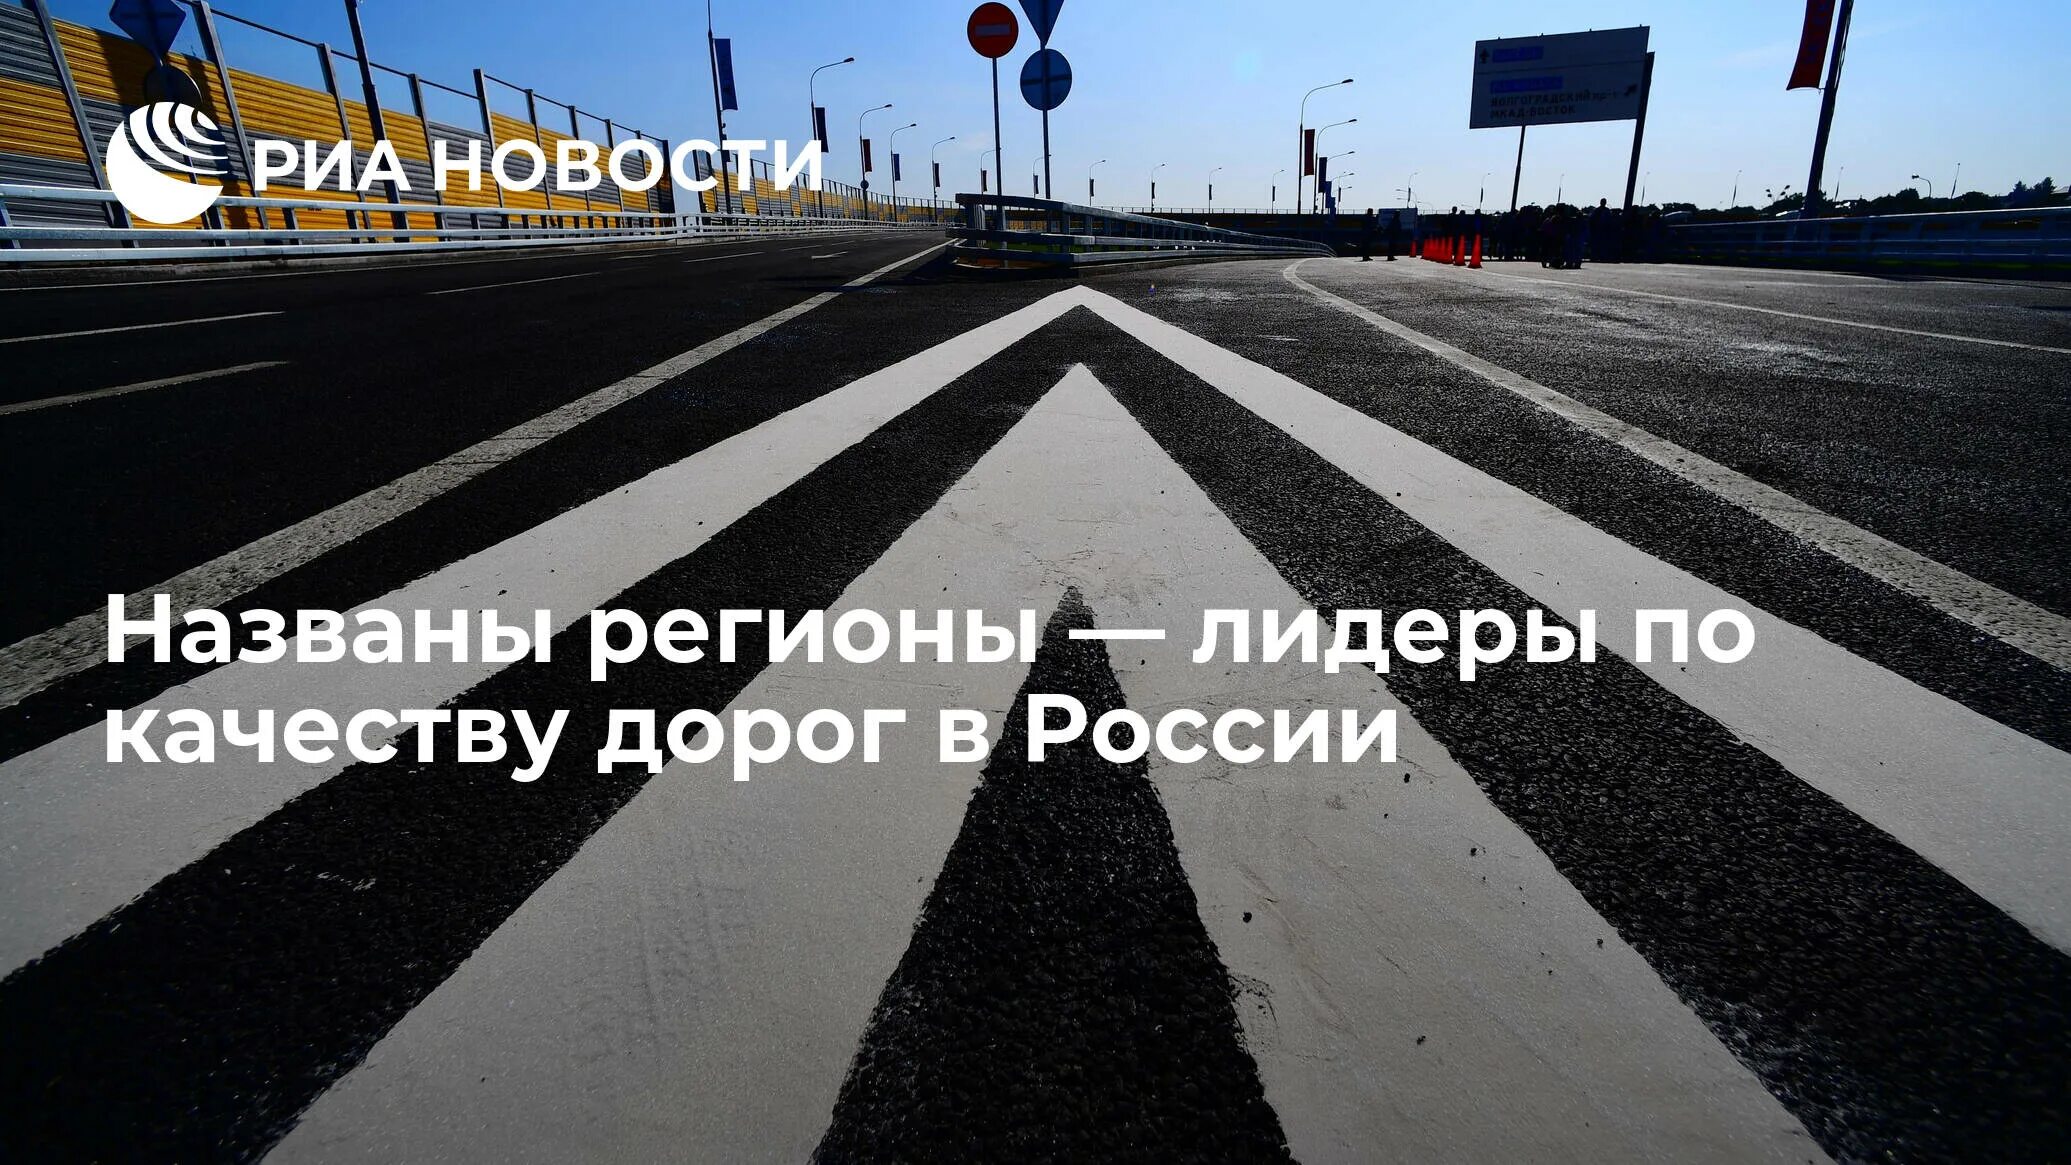 Загруженность дороги в определенное время. Качество дорог. Самая лучшая дорога в России. Москва дорога. Лучшие дороги в мире.